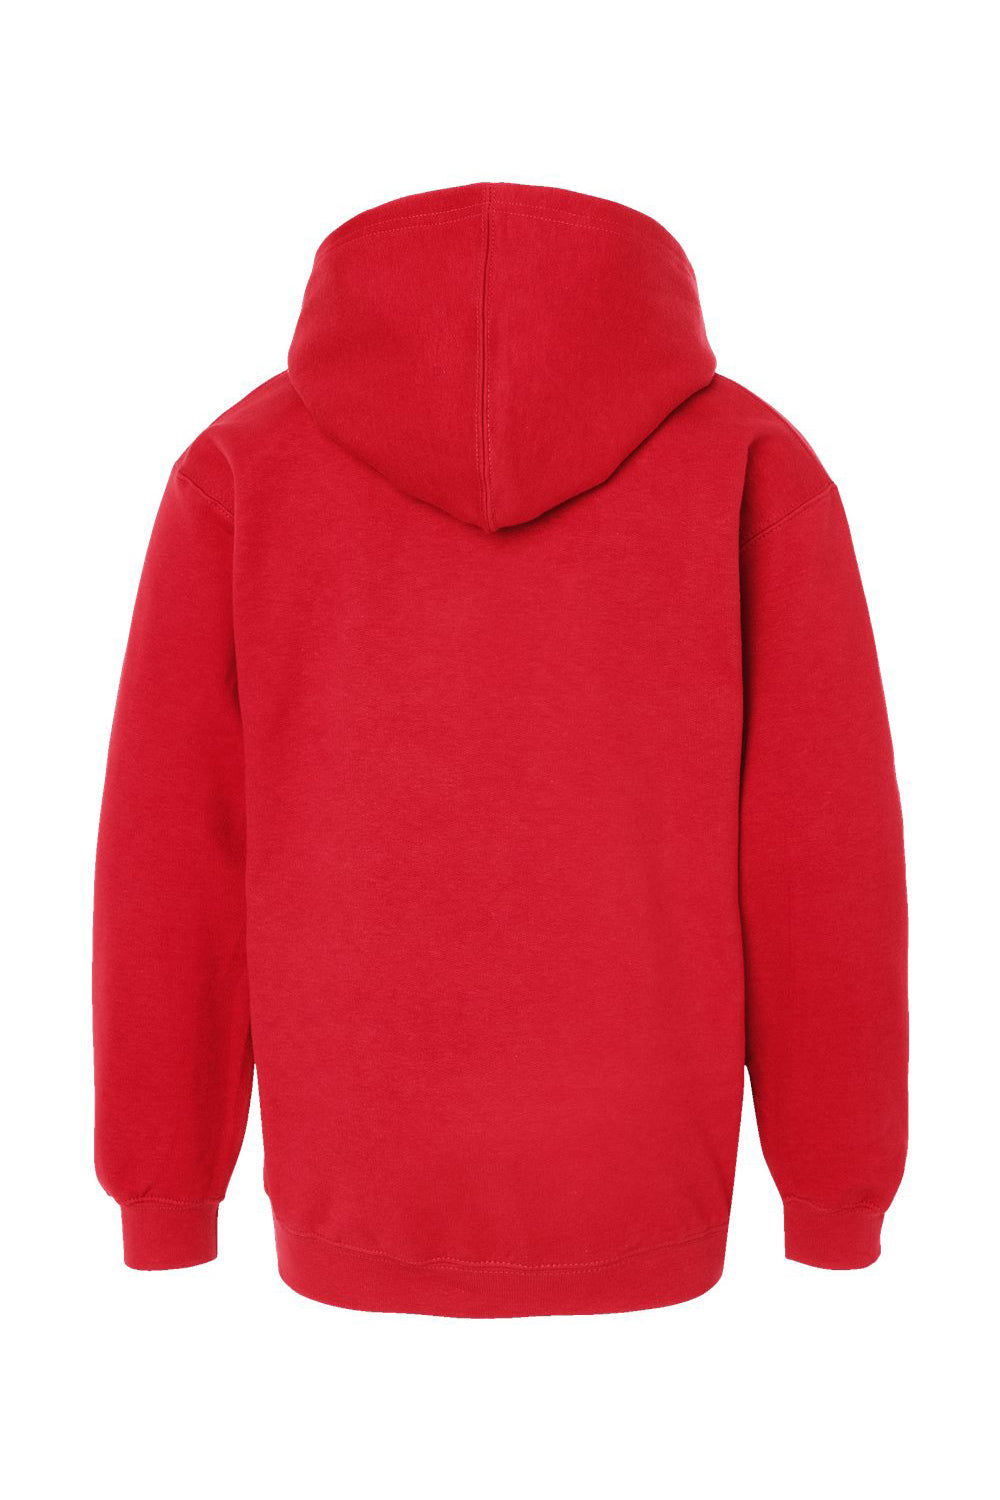 Tultex 320Y Youth Hooded Sweatshirt Hoodie Red Flat Back